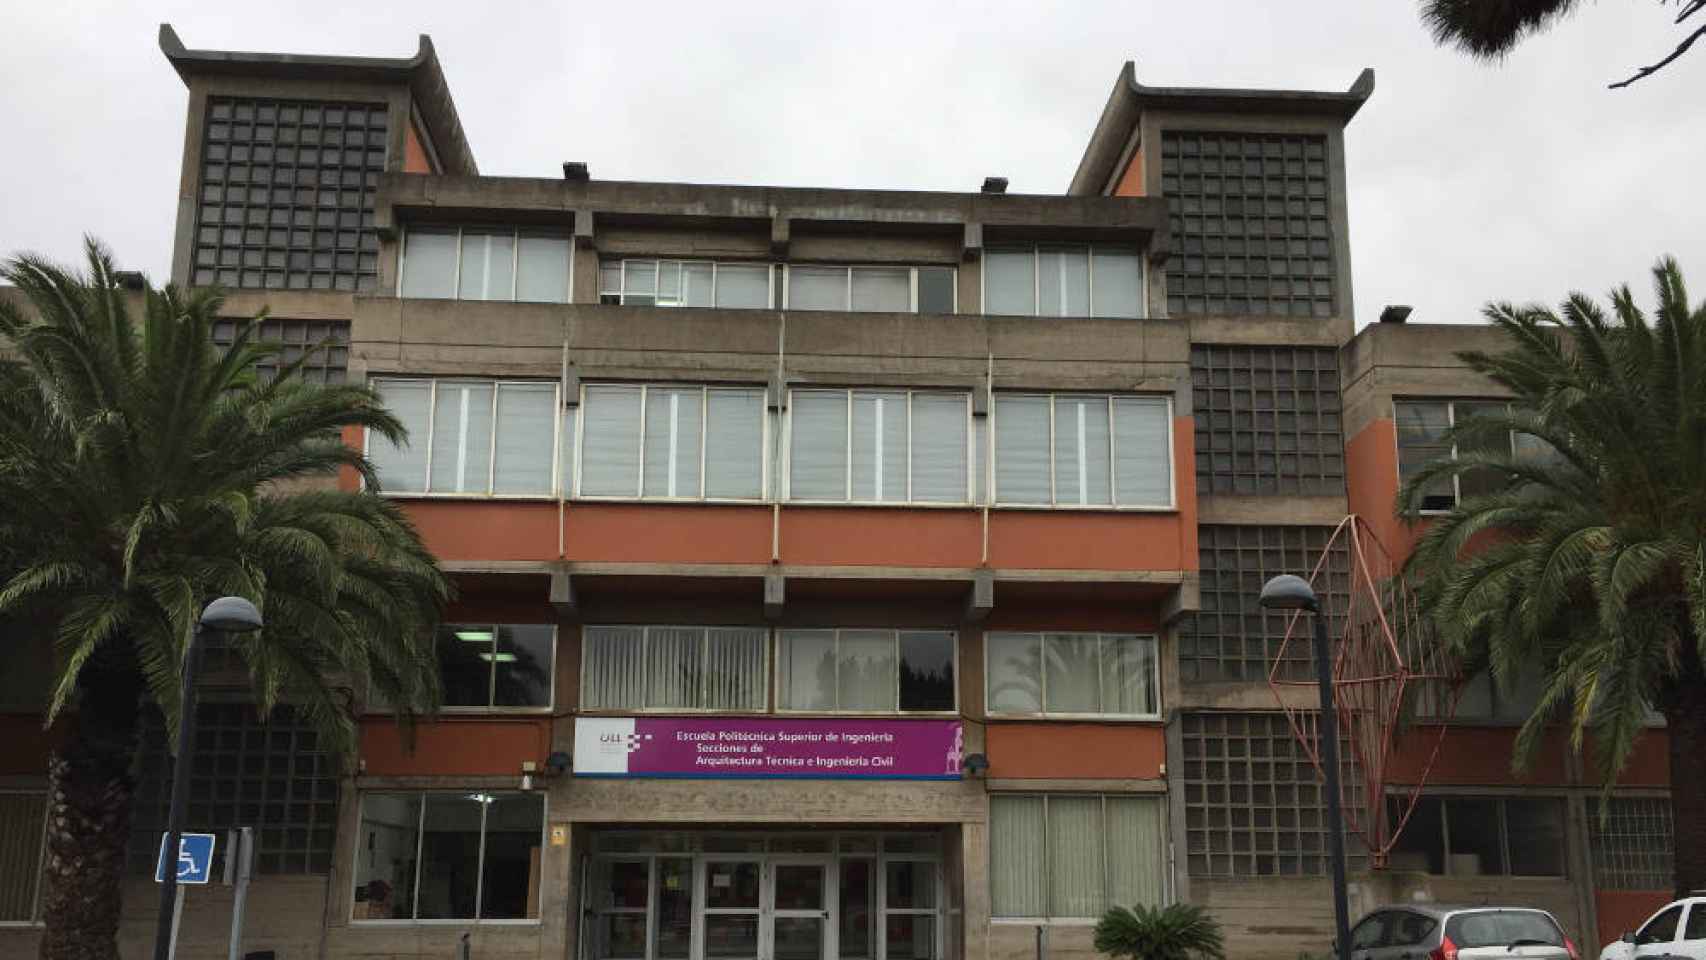 Escuela Politécnica Superior de Ingeniería de la Universidad de La Laguna